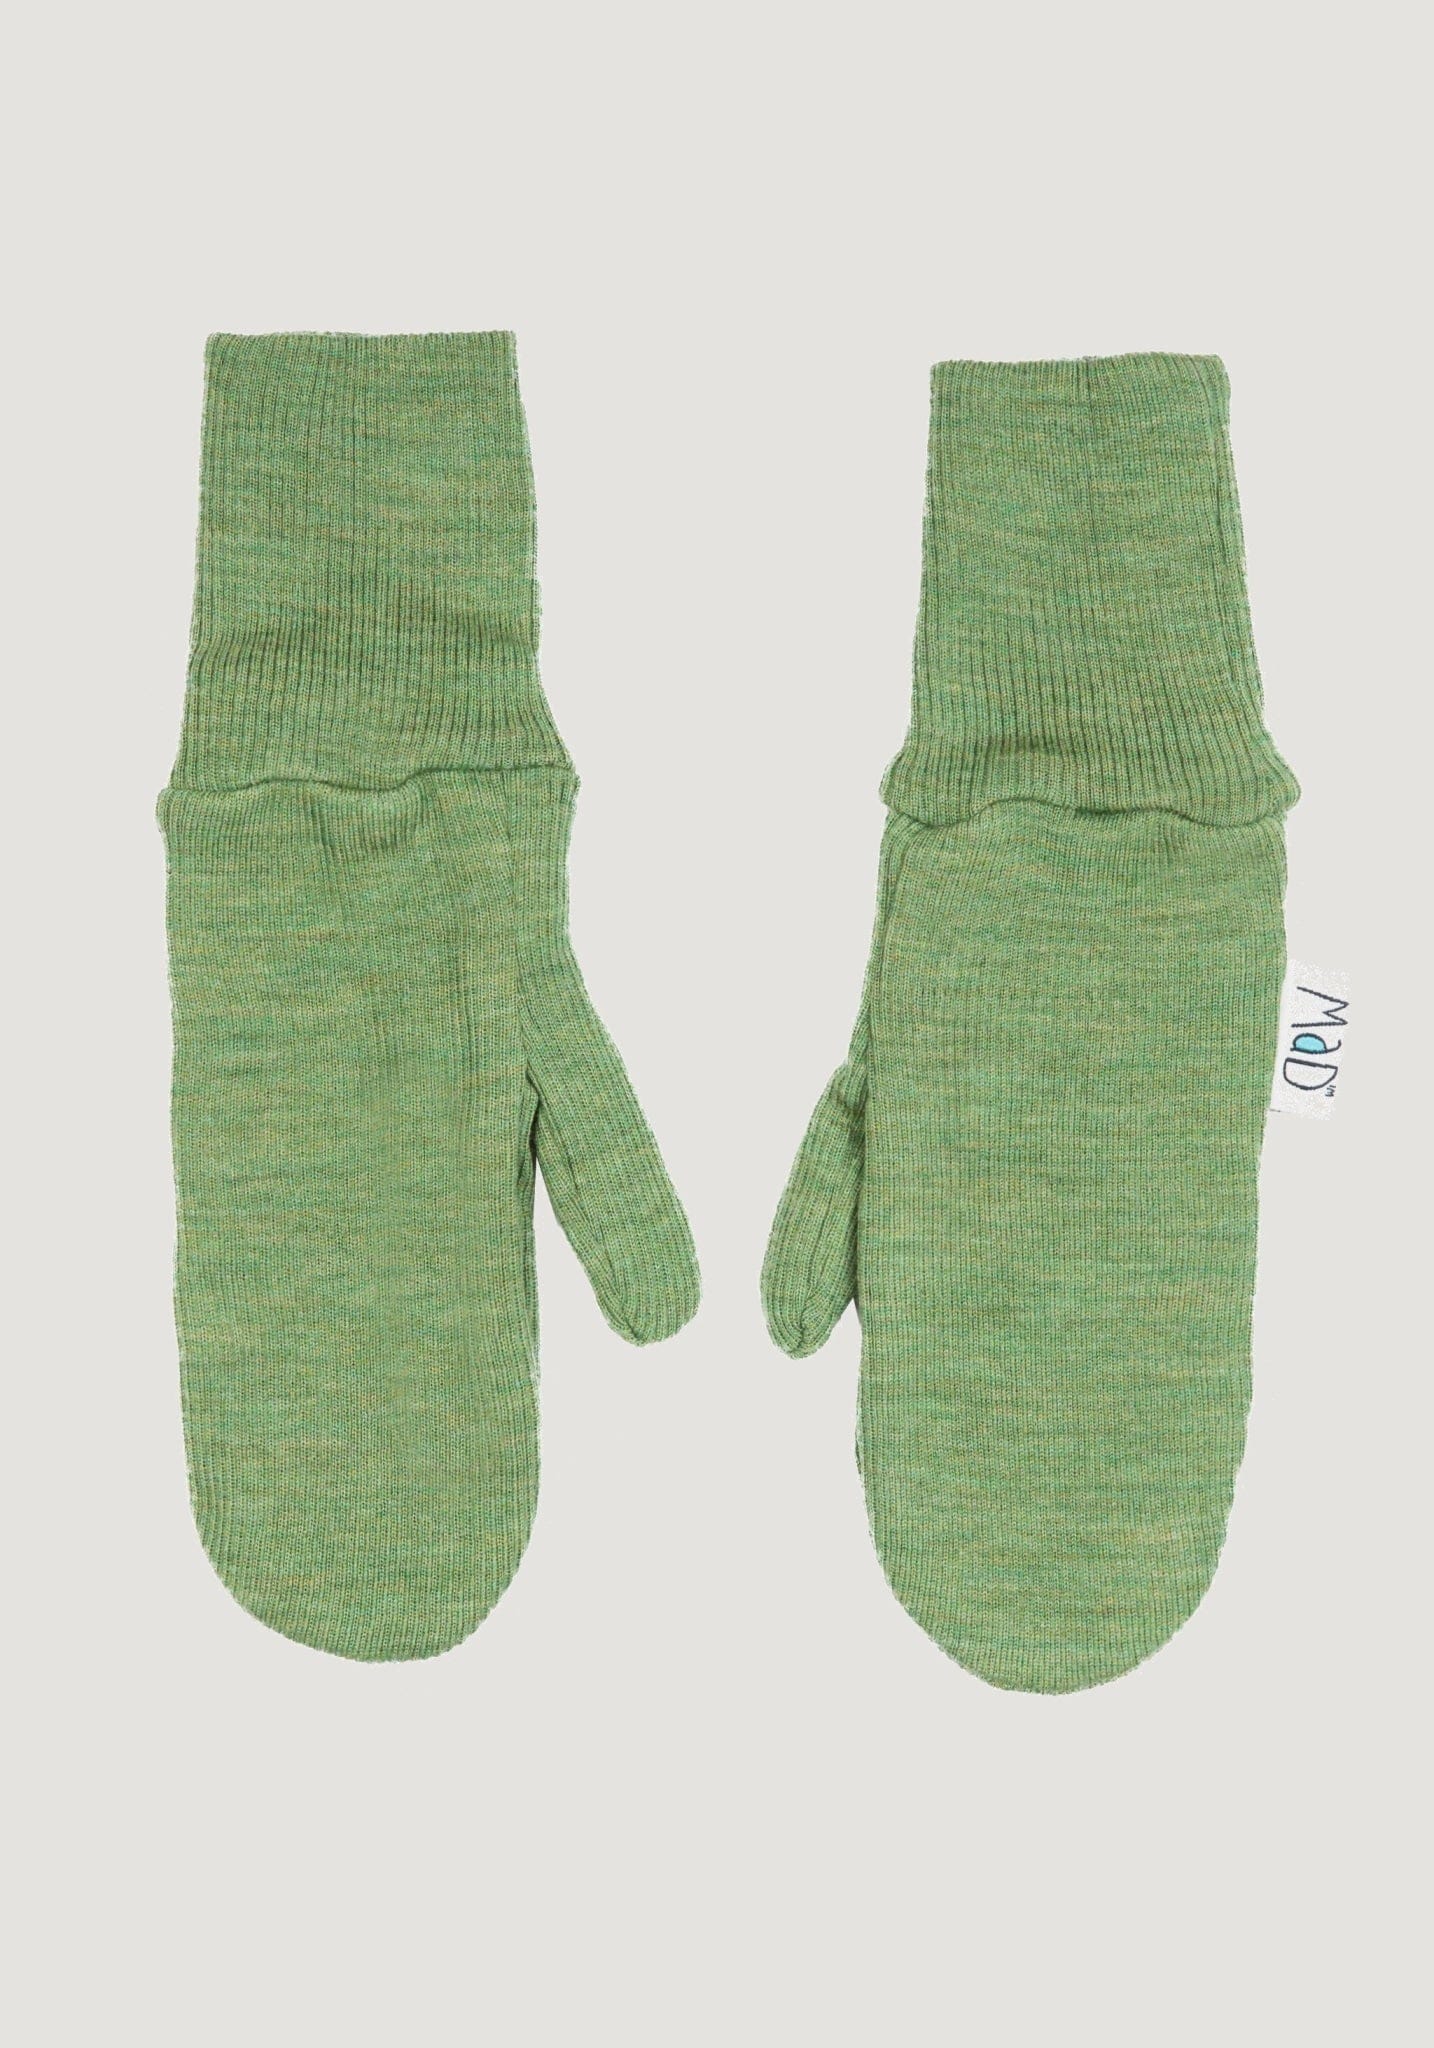 Mănuși adulți dublate din lână merinos - Jade Green MaM HipHip.ro